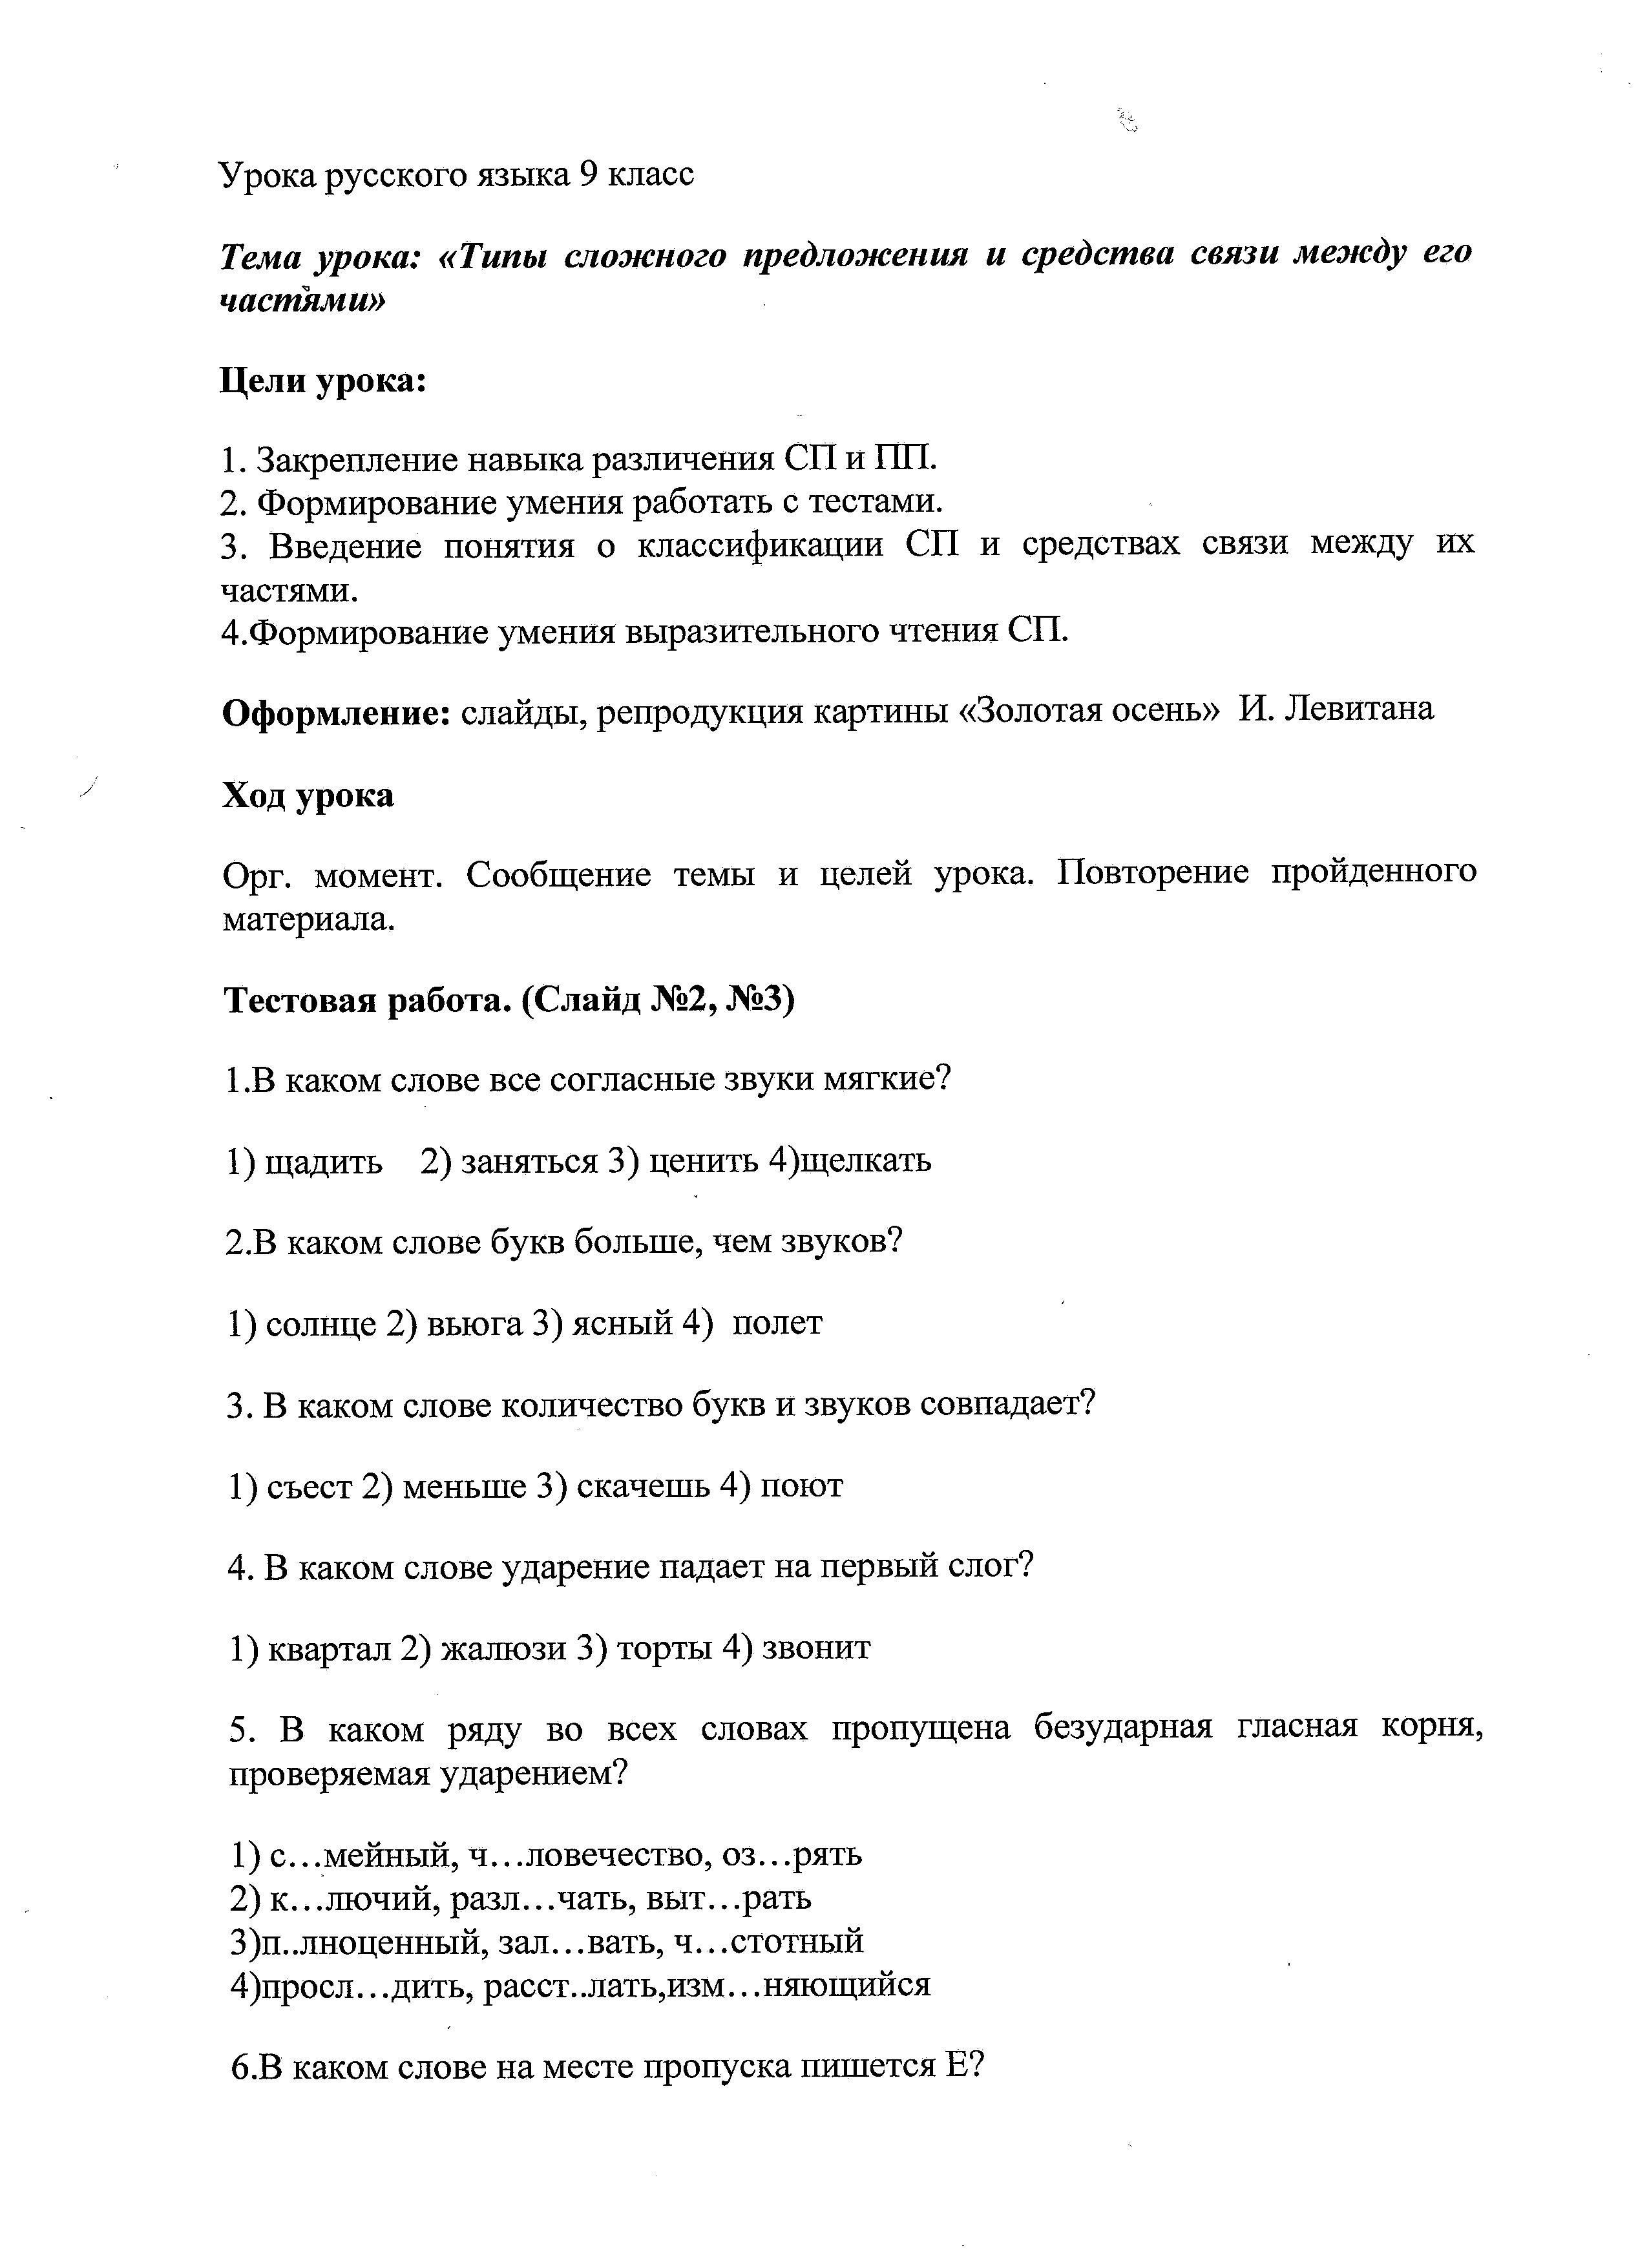 Урок русского языка. Типы сложного предложения и средства связи между его частями (9 класс)